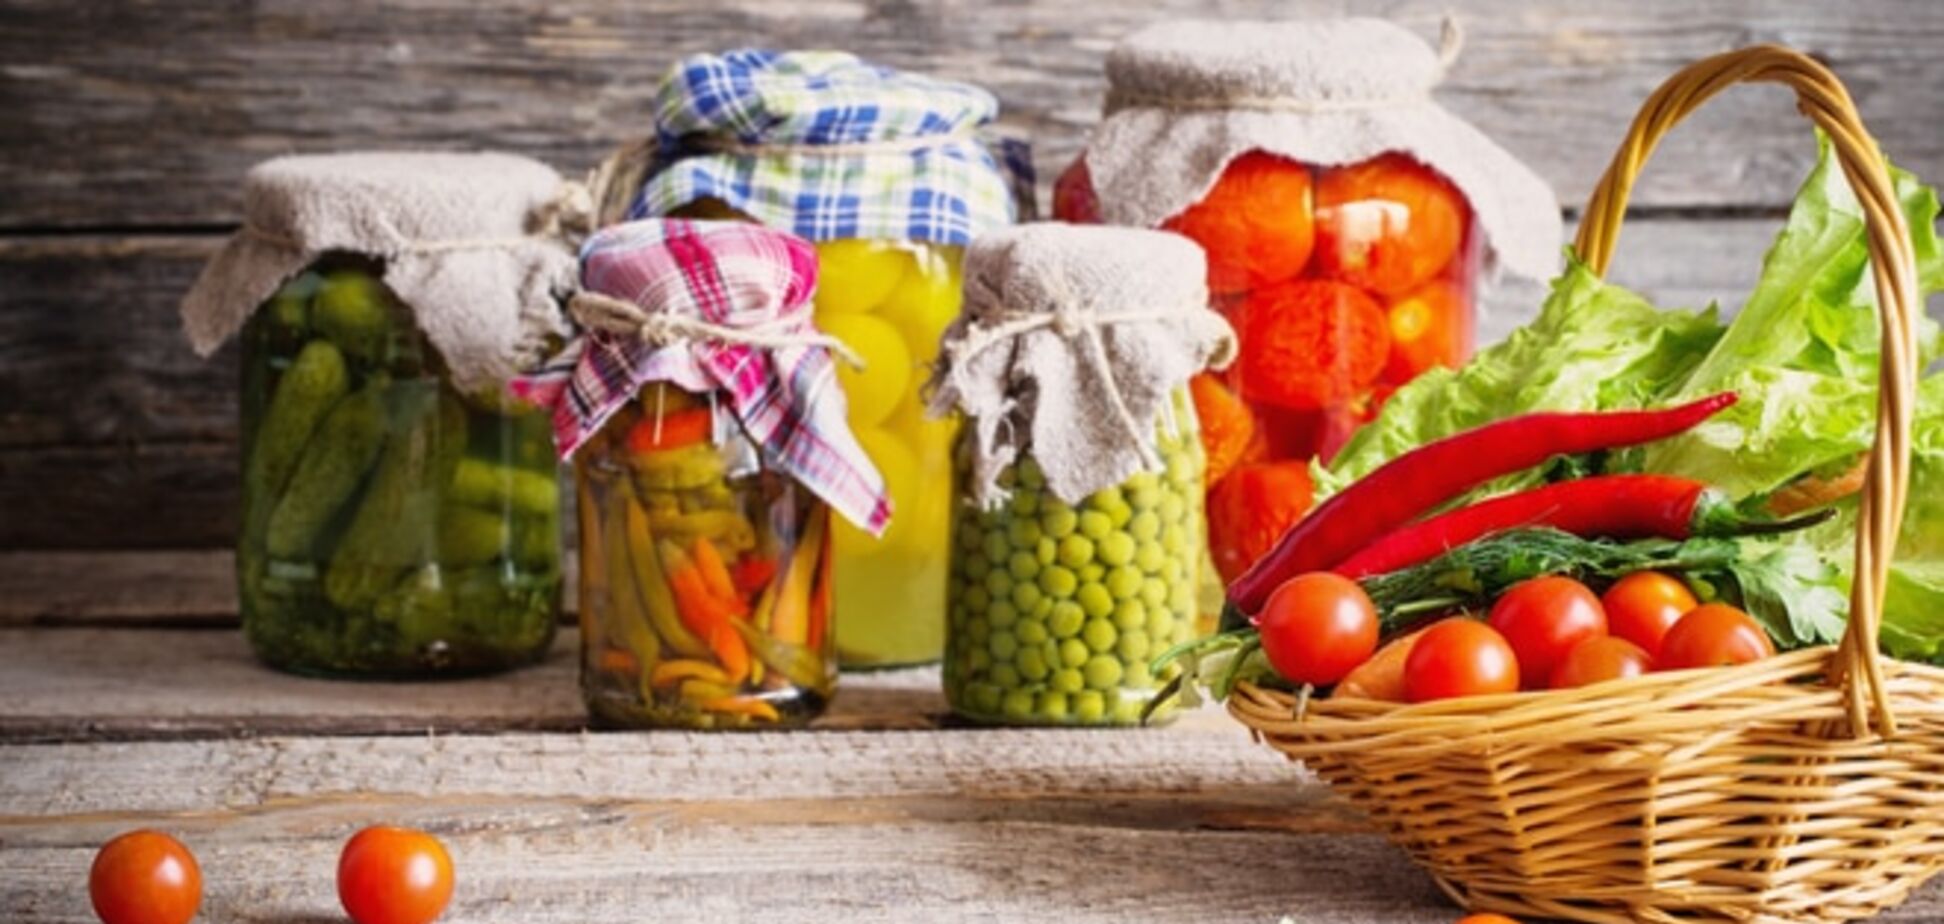 Как правильно консервировать овощи и фрукты, чтобы не угробить здоровье